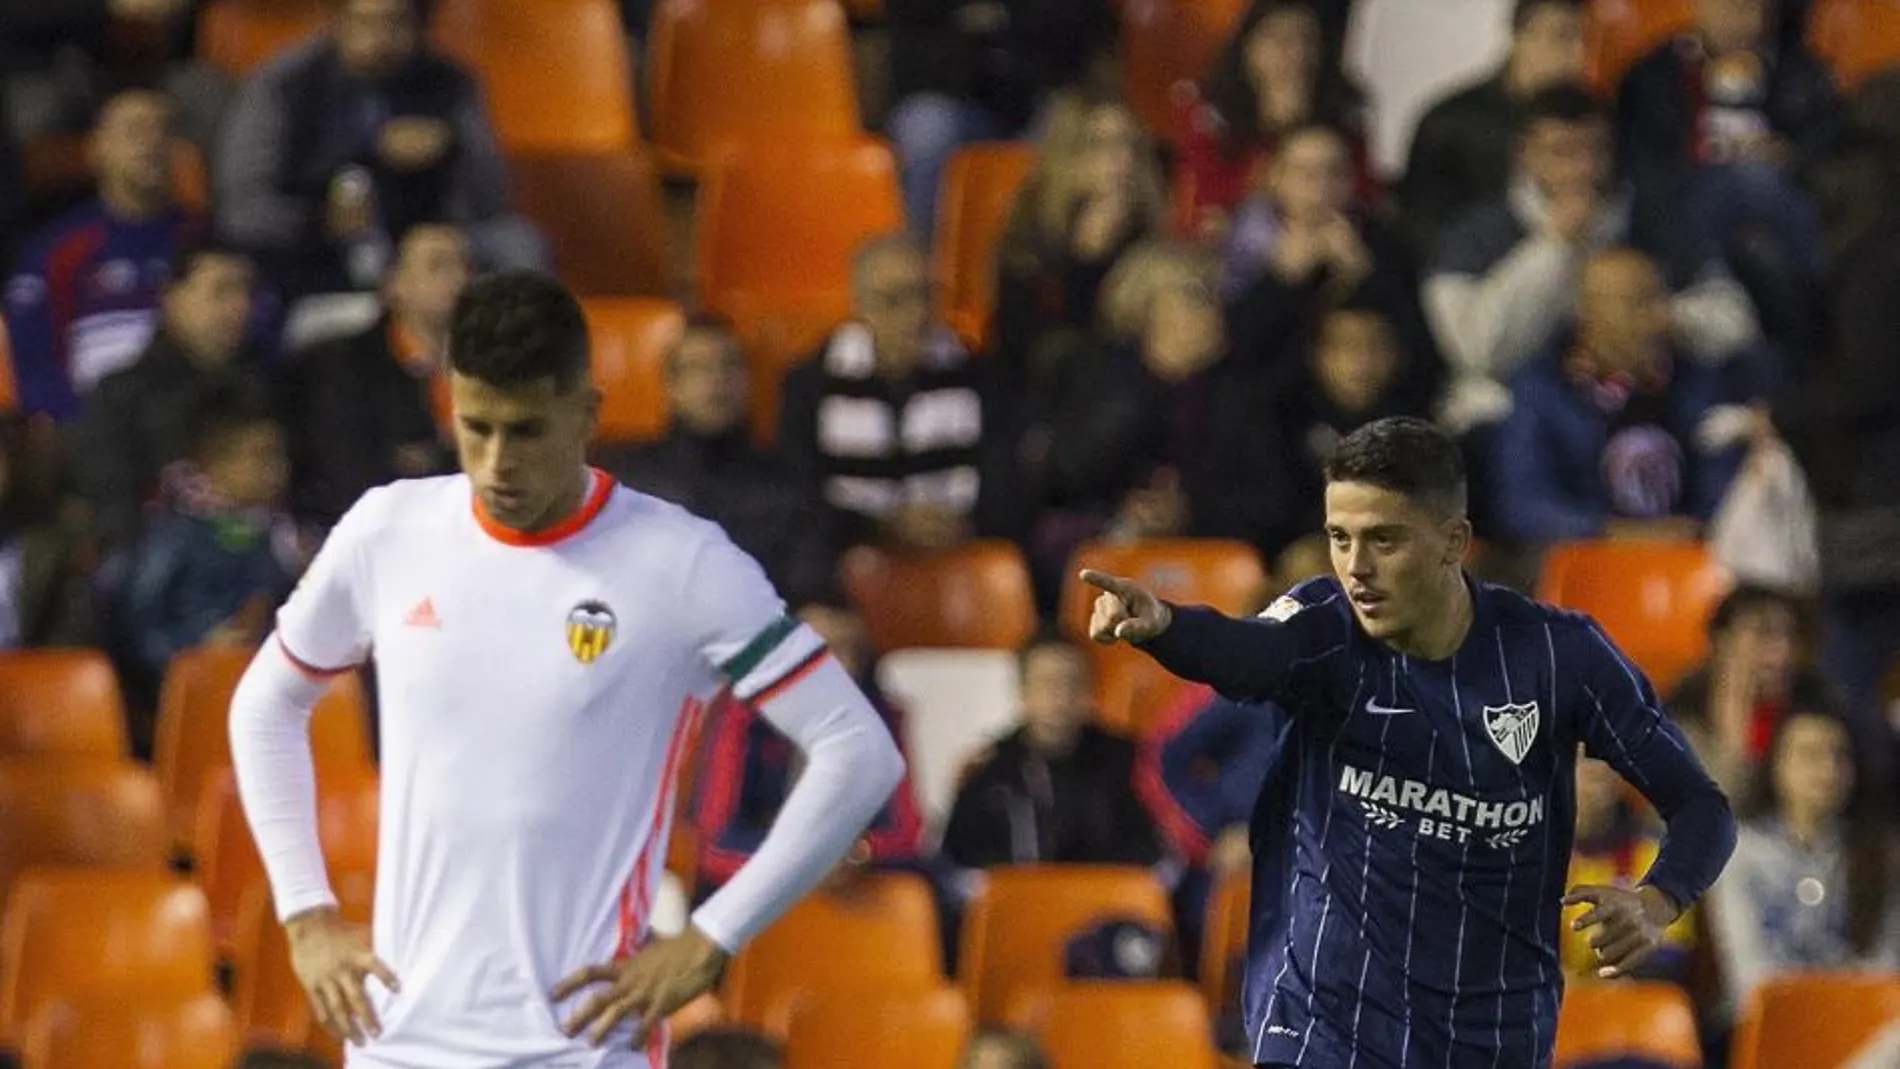 El centrocampista del Málaga Pablo Fornals (d) celebra tras marcar ante el Valencia, durante el partido